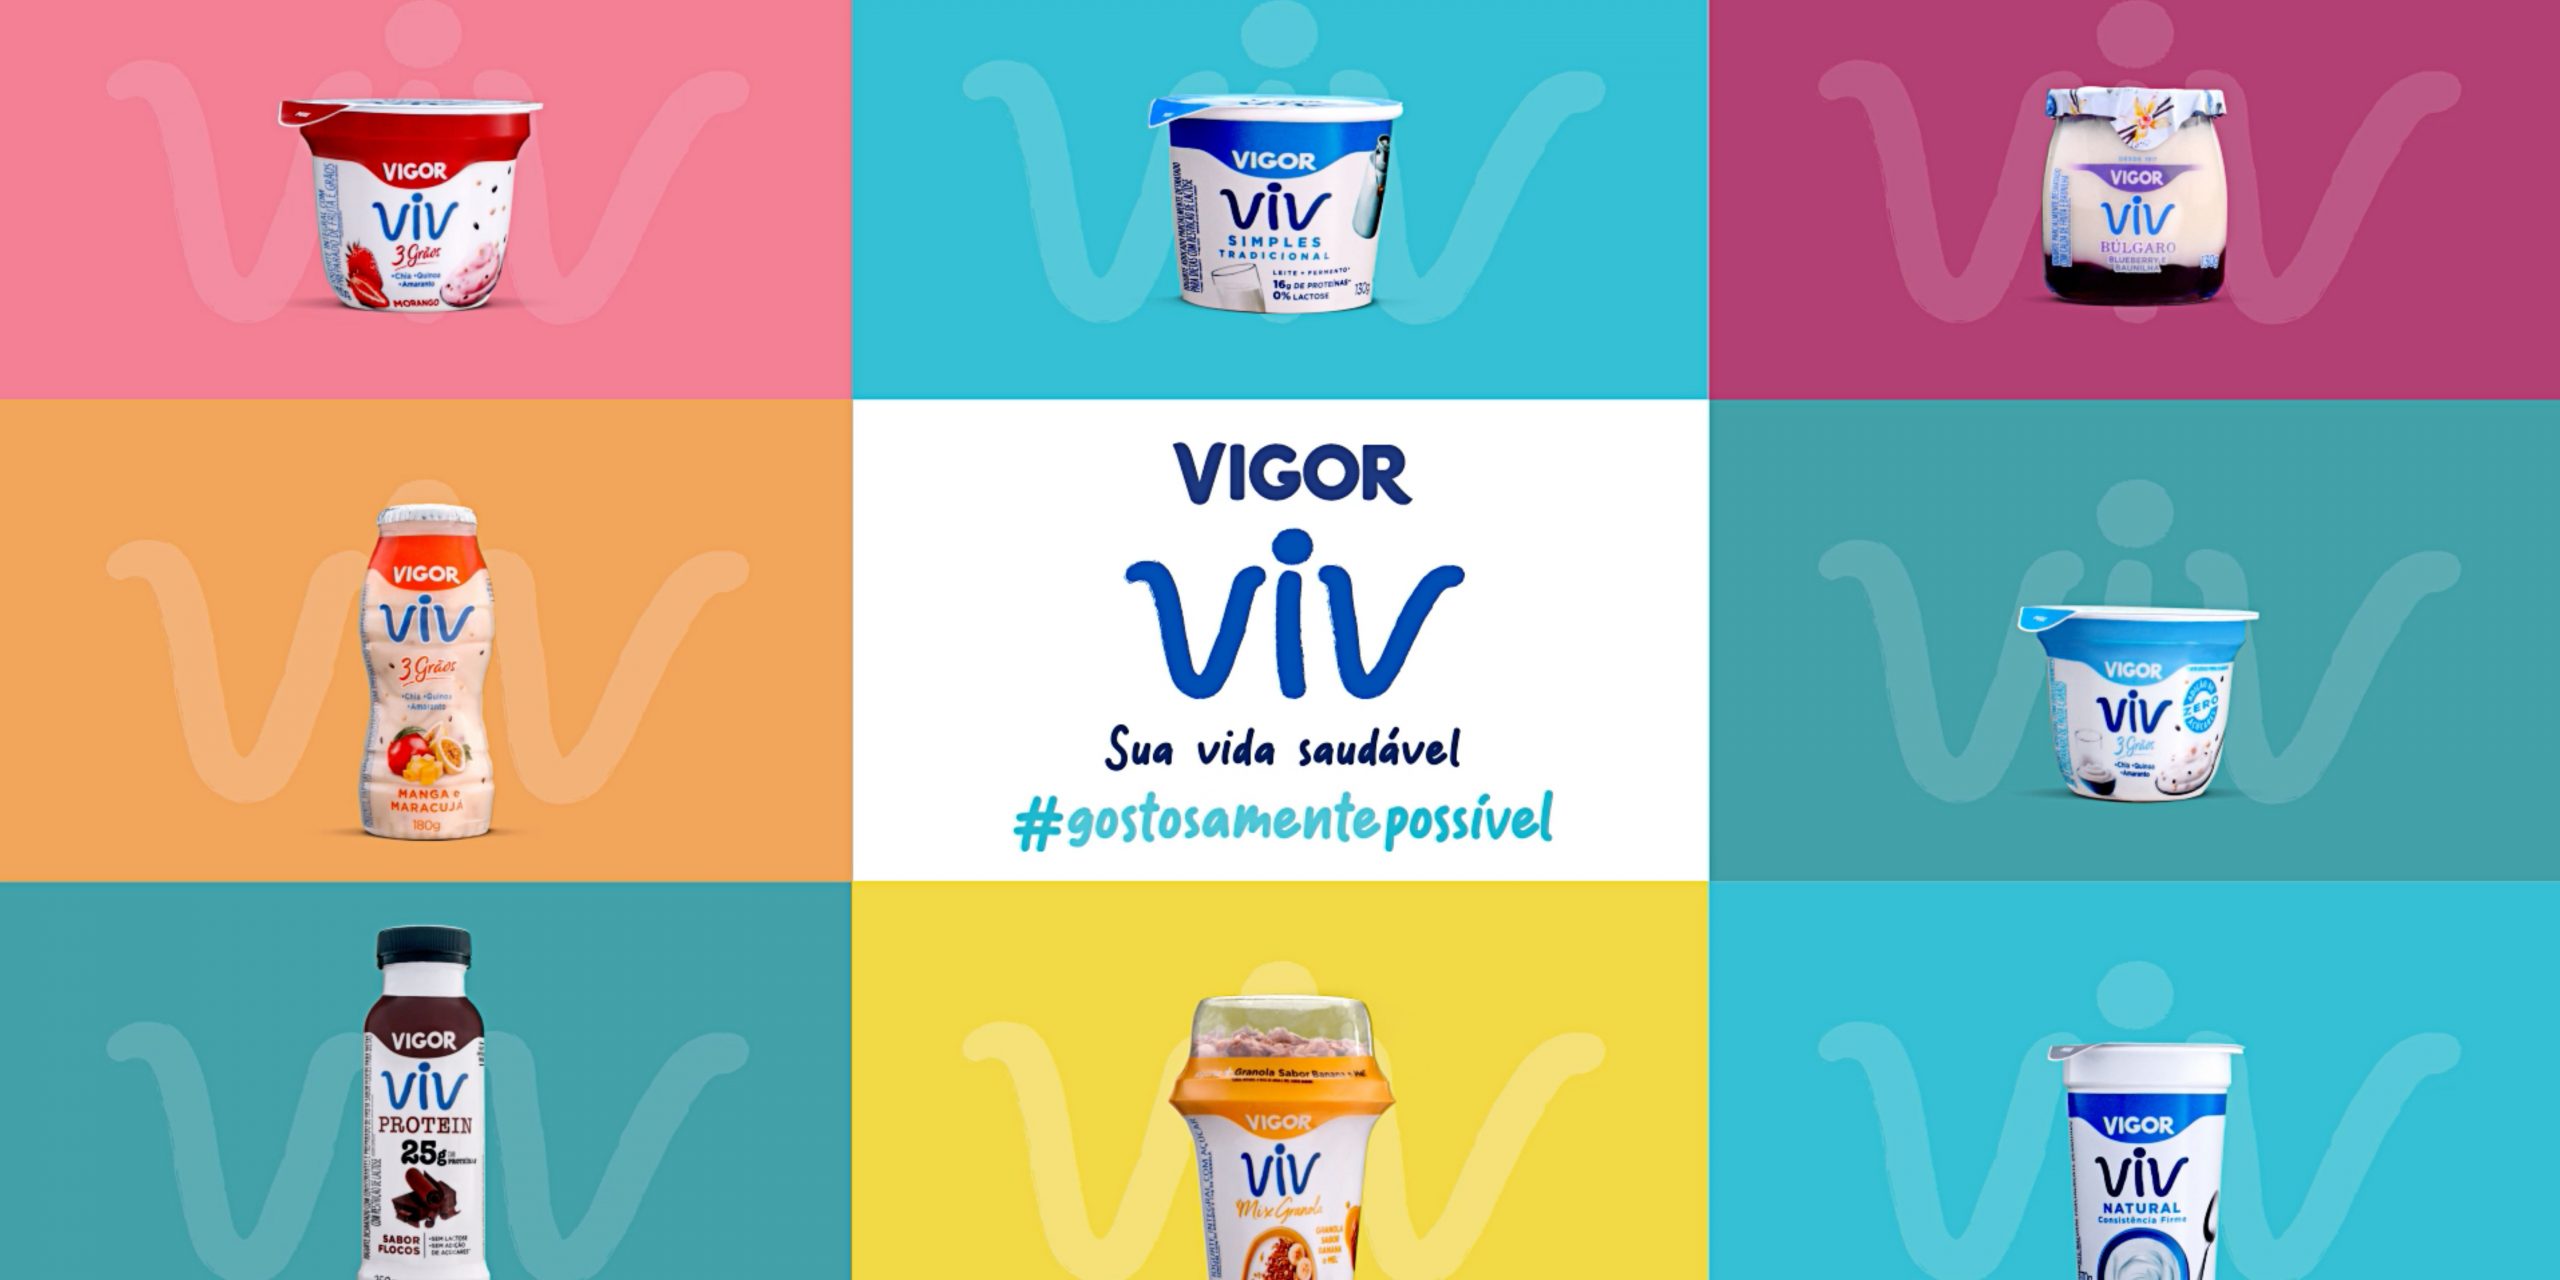 Para lançar a marca Viv, Vigor ressignifica os conceitos de saúde e bem-estar